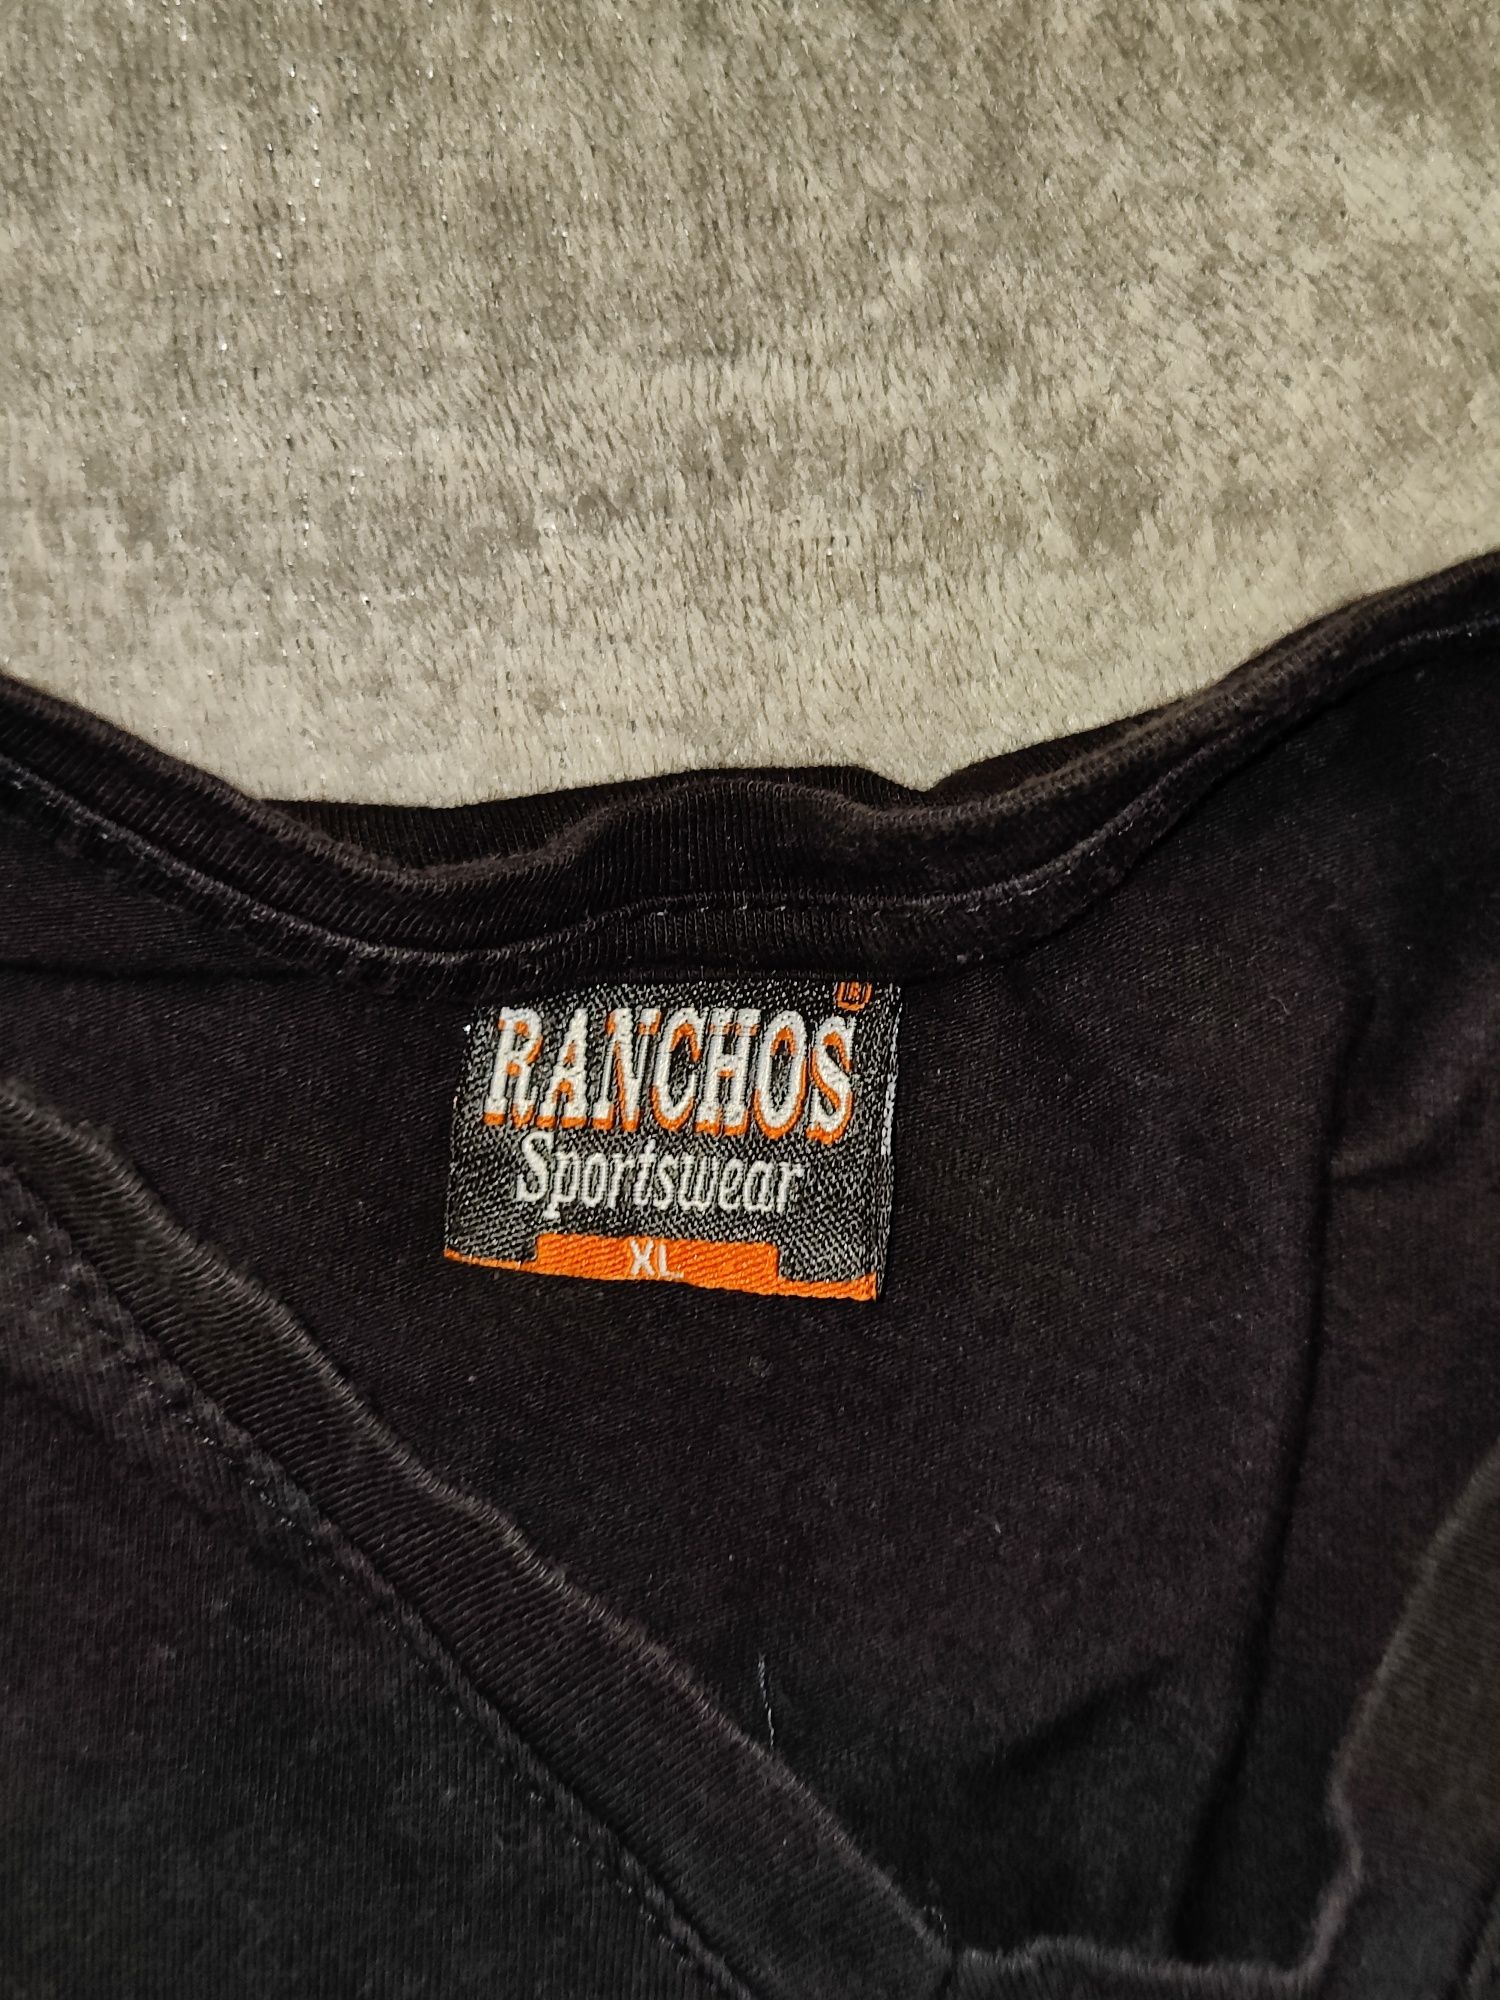 Tricou Ranchos Sportswear